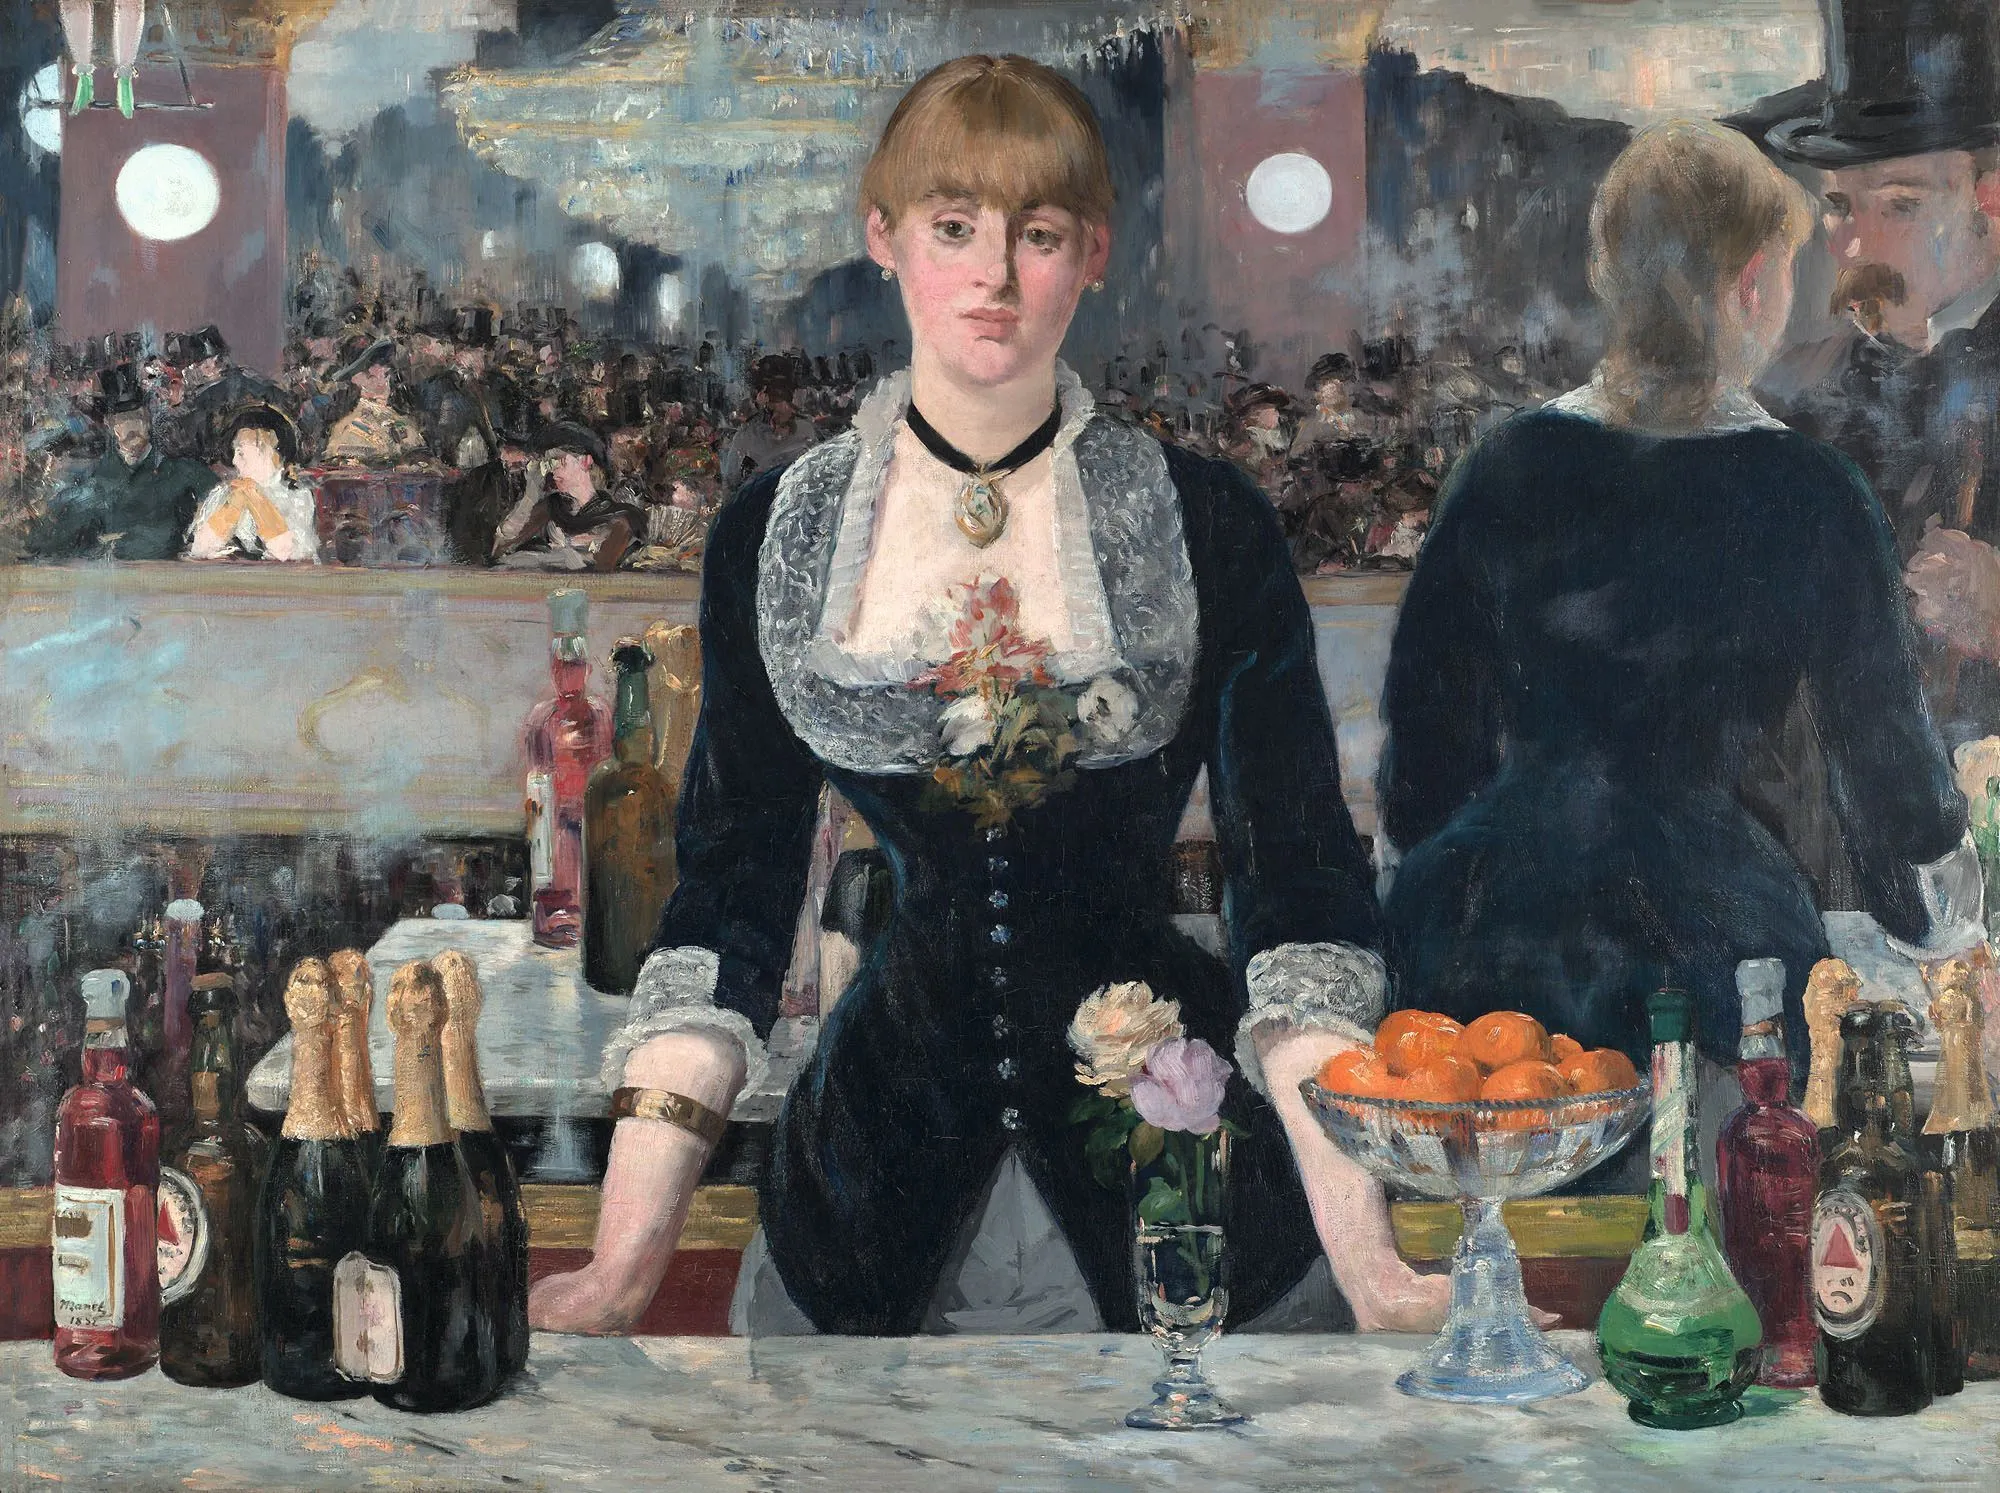 Édouard Manet, Un bar aux Folies Bergère, 1881 - 1882, huile sur toile, 96 × 130 cm, galerie Courtauld, Londres.